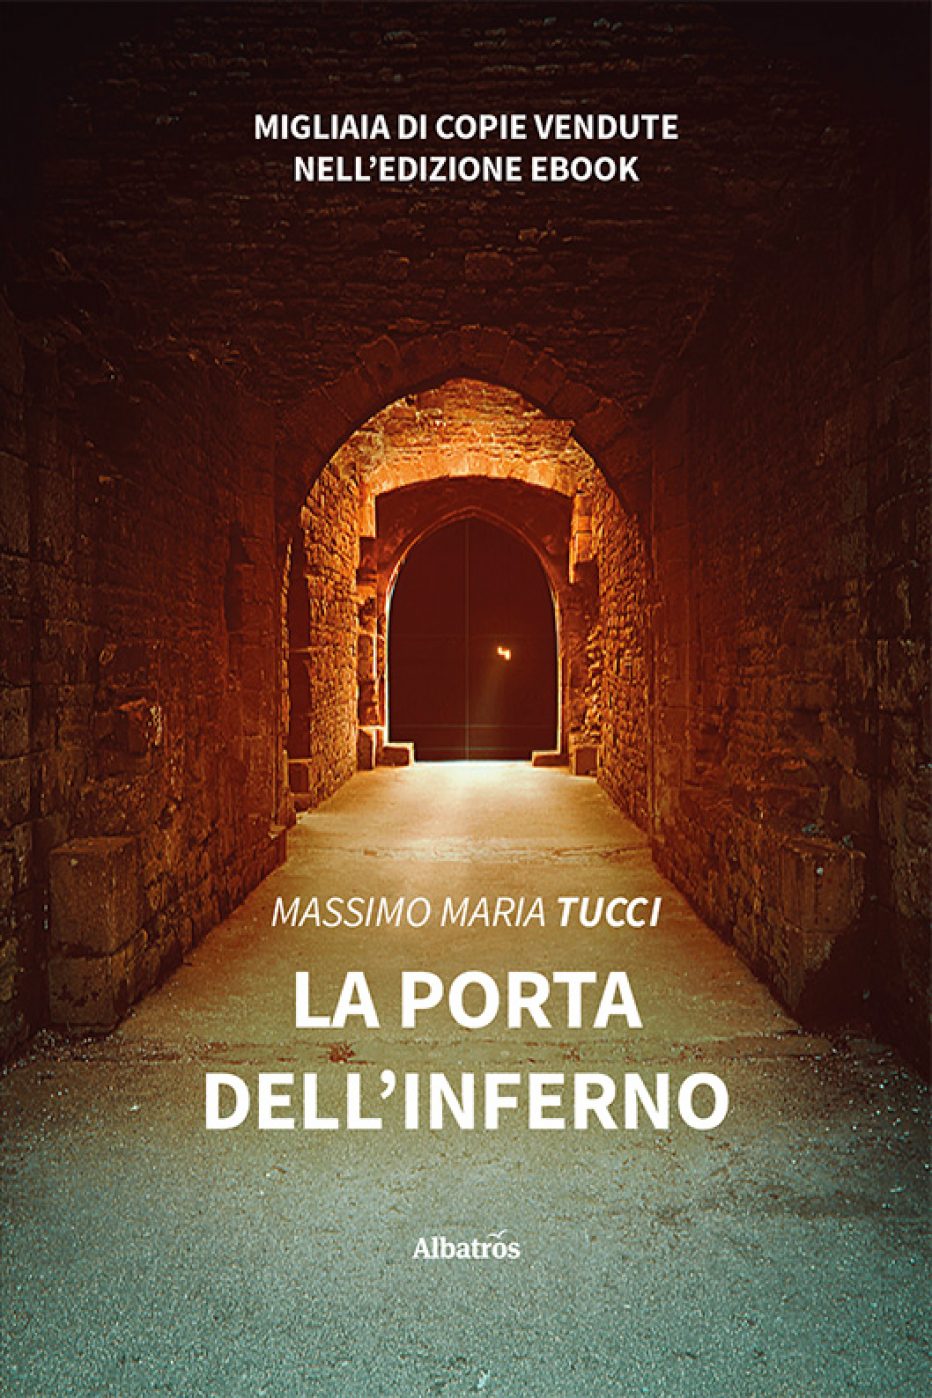 ‘La porta dell’inferno’ di Massimo Maria Tucci